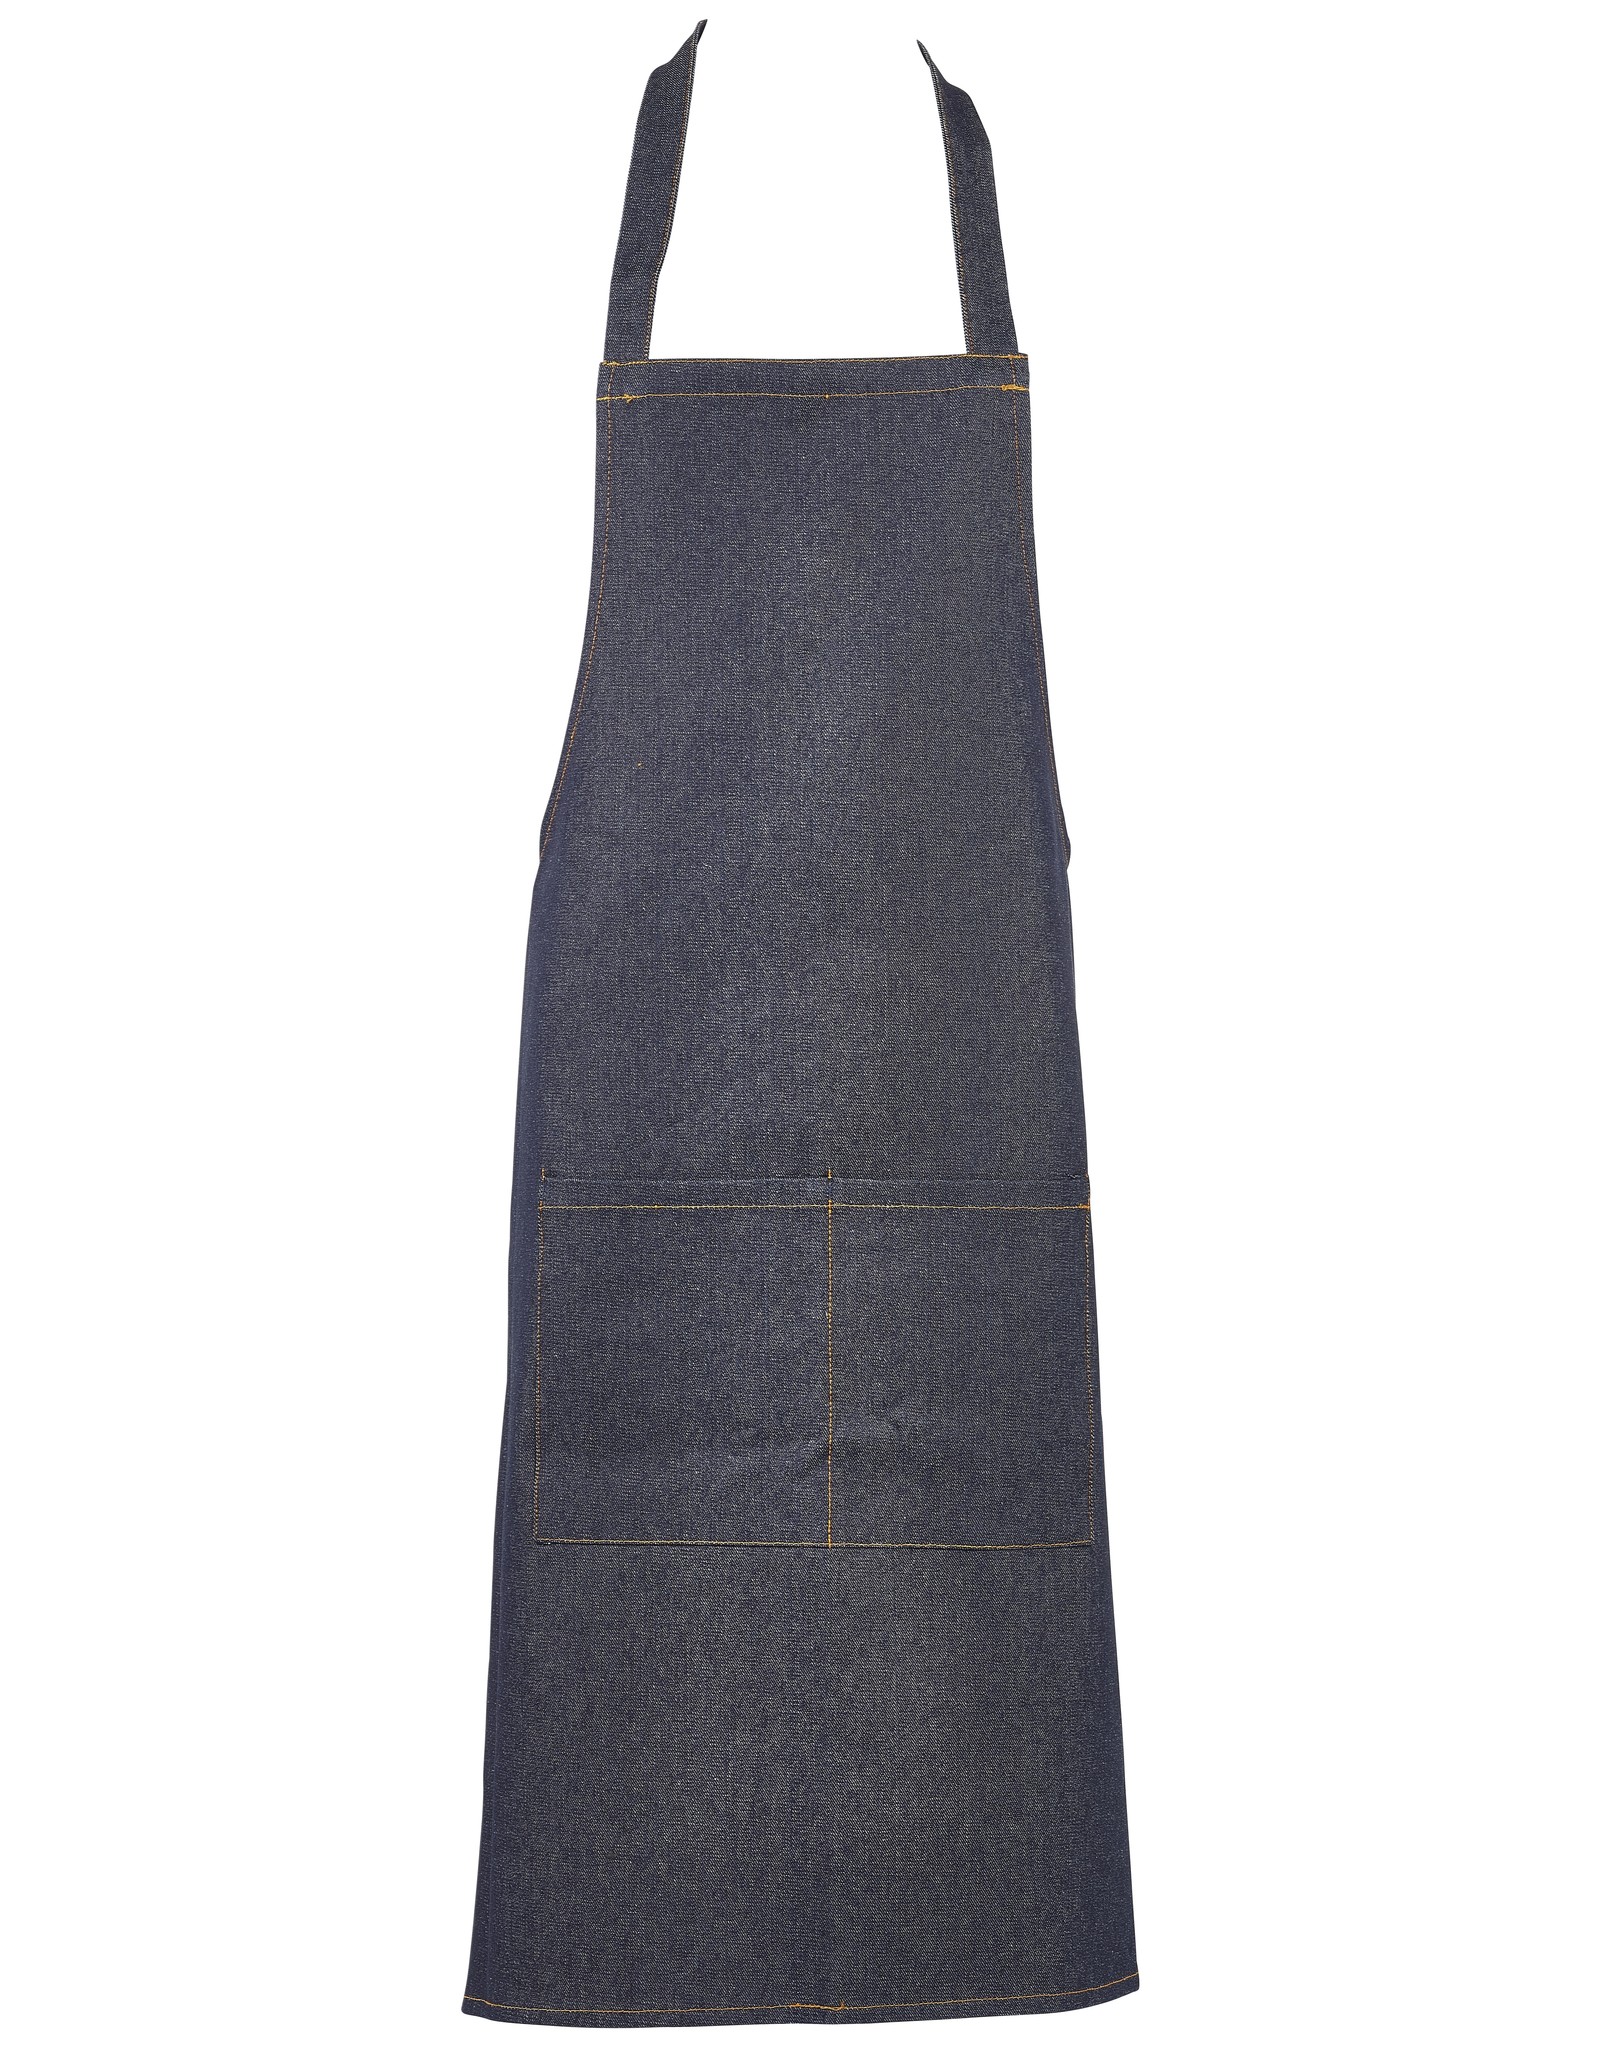 Stylepoint Slabschort spijkerstof donkerblauw 70 x 90 cm